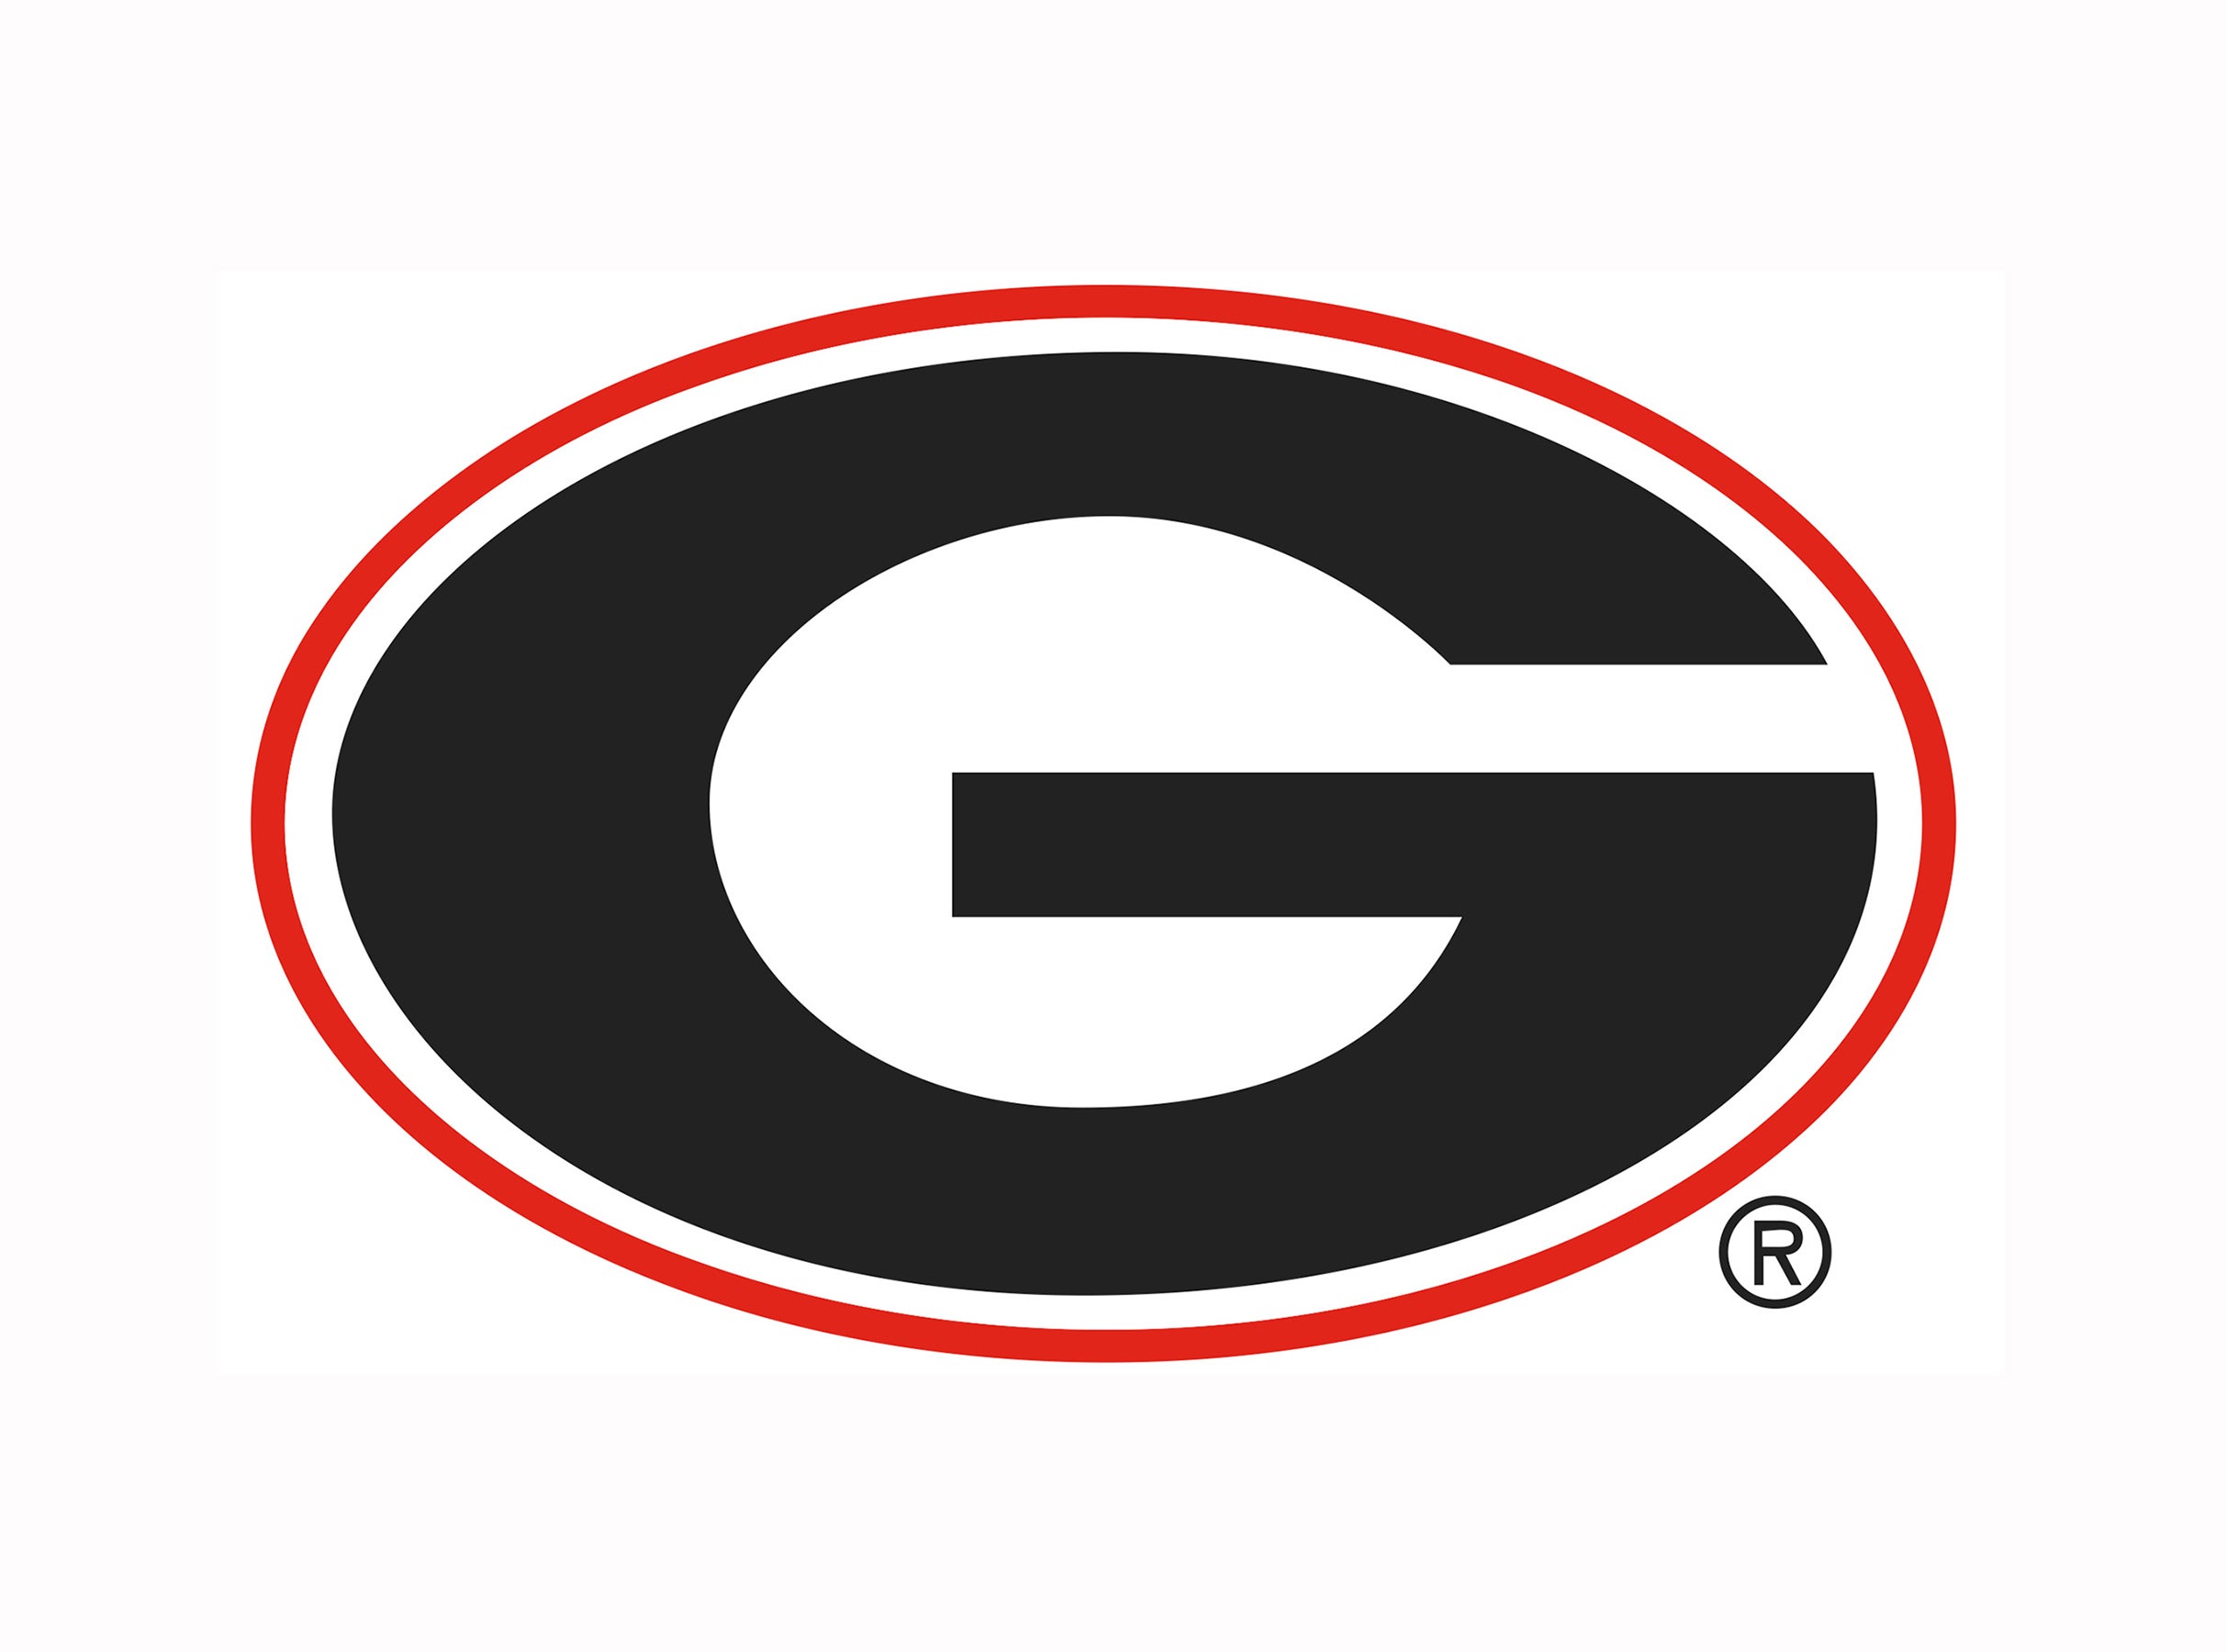 image of Georgia Bulldogs Football vs. Tennessee Vols Football